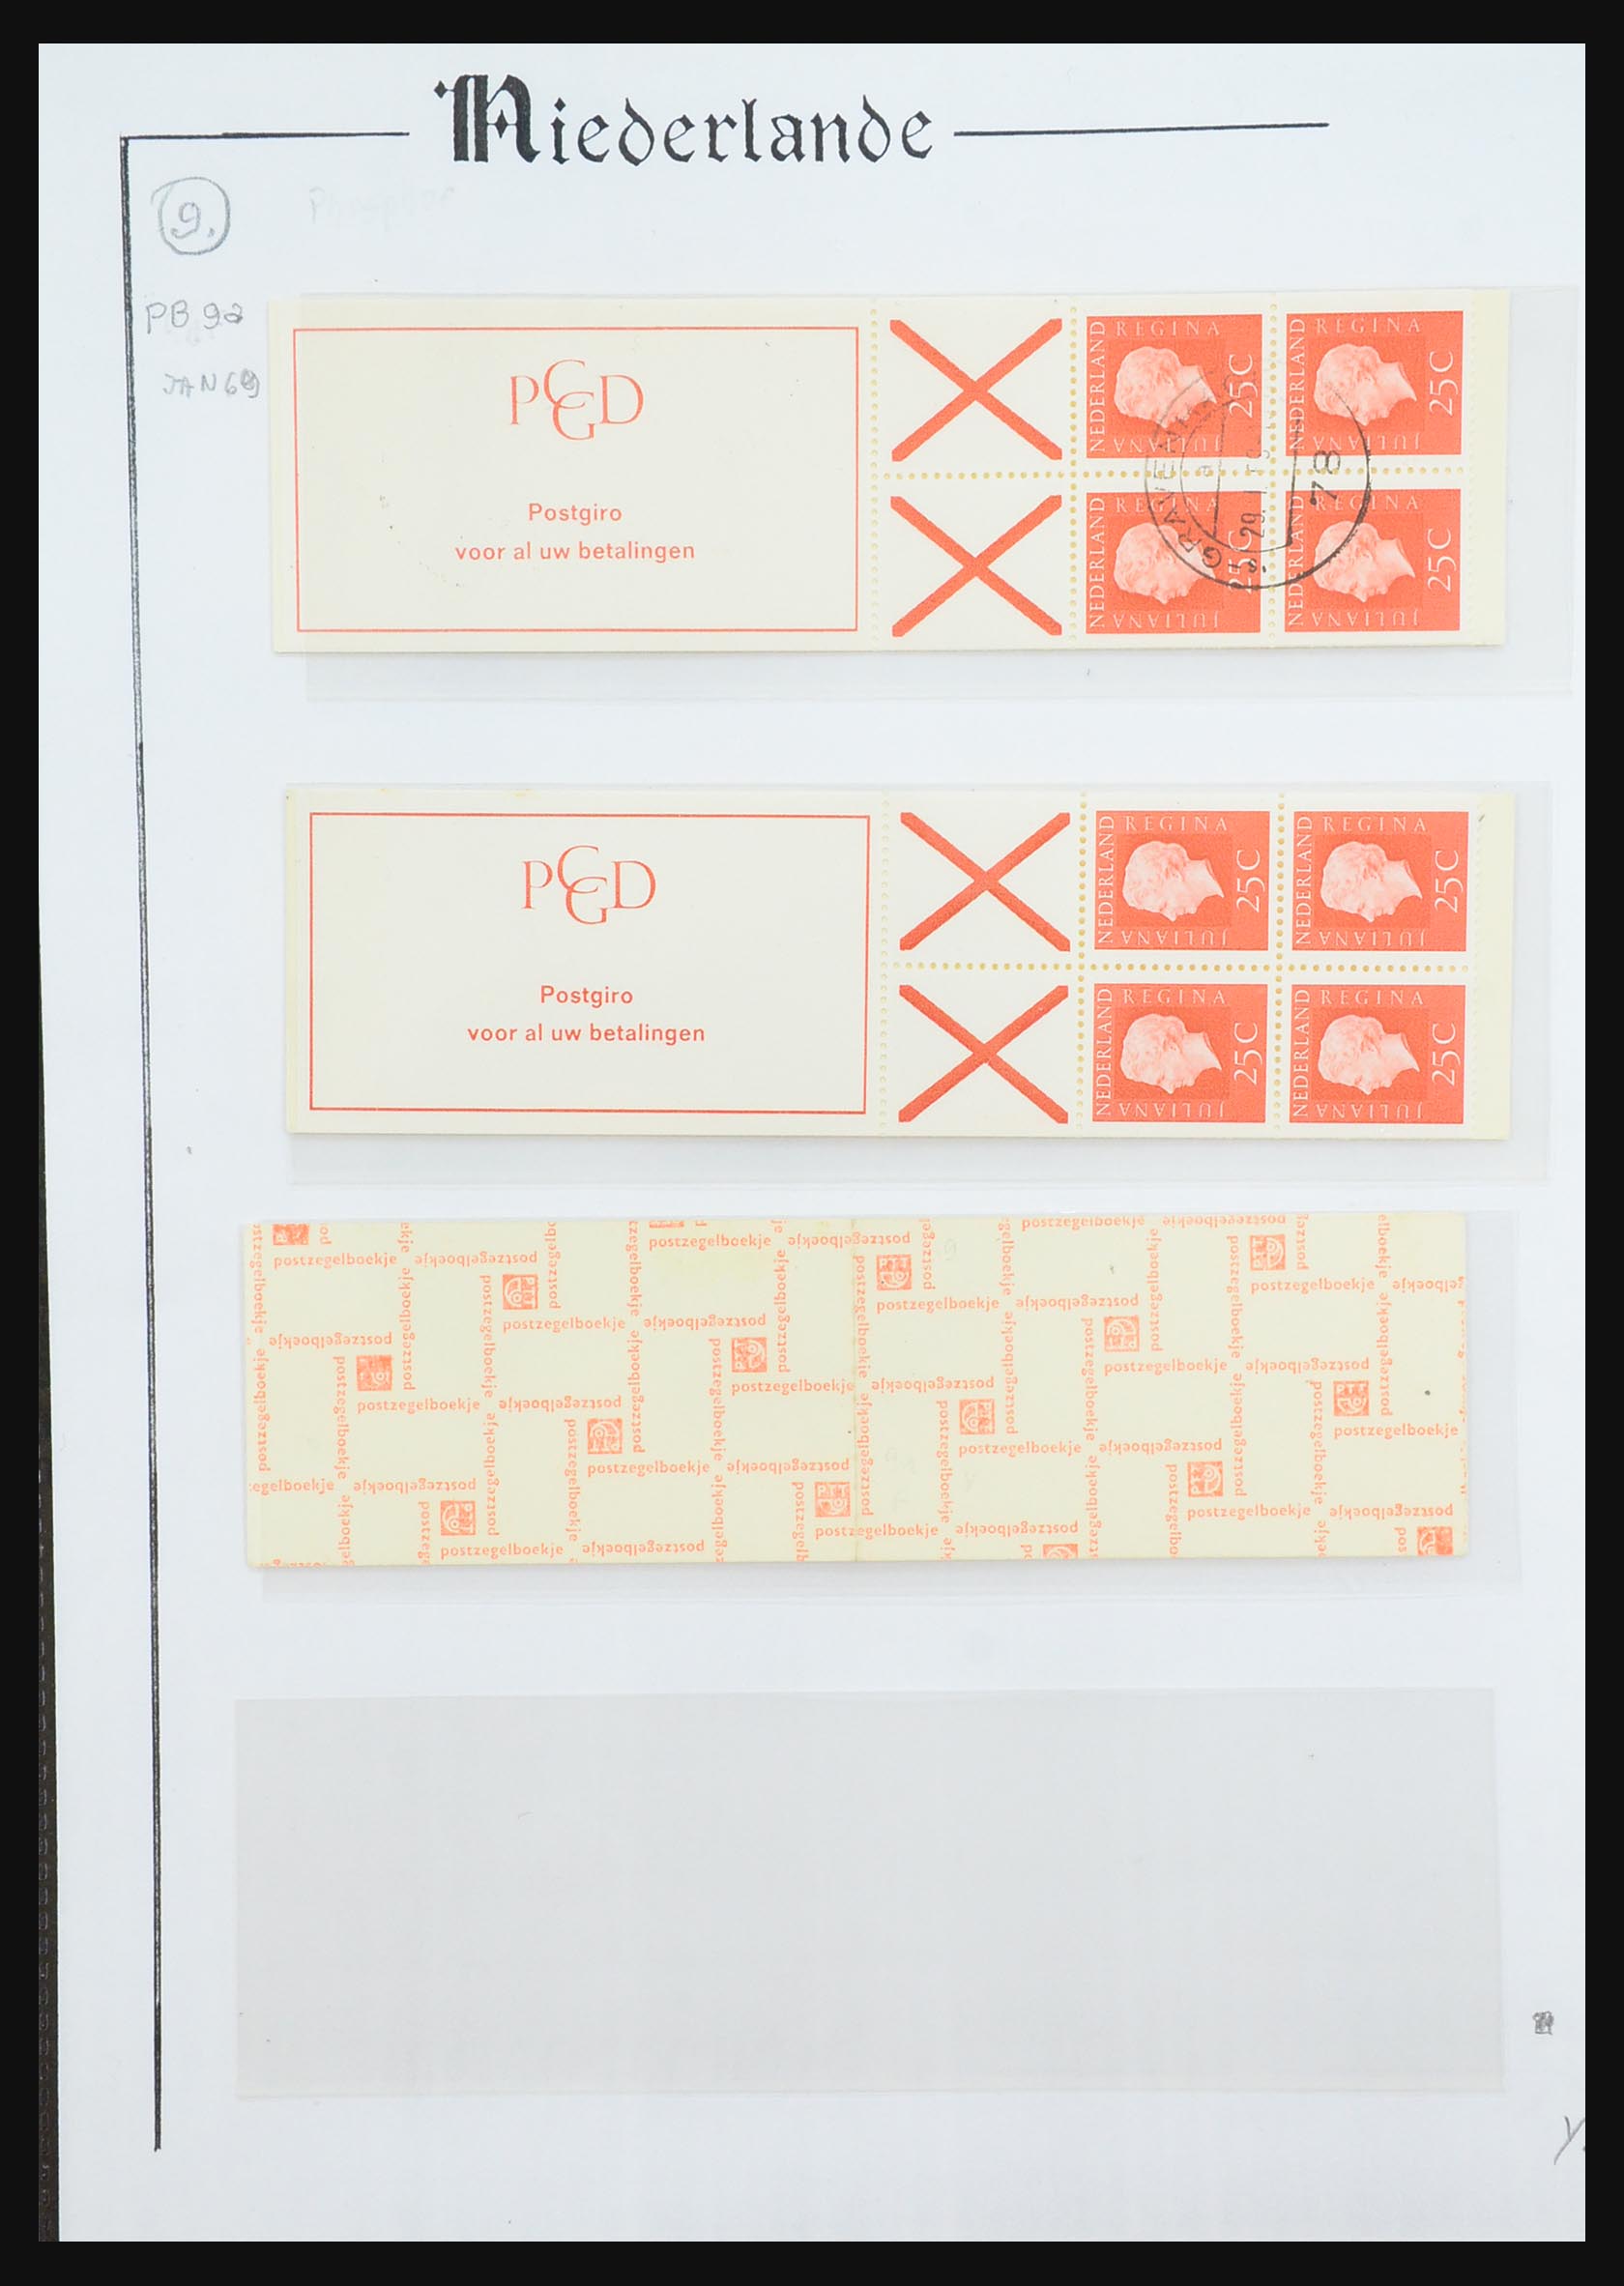 31311 038 - 31311 Netherlands stamp booklets 1964-1994.